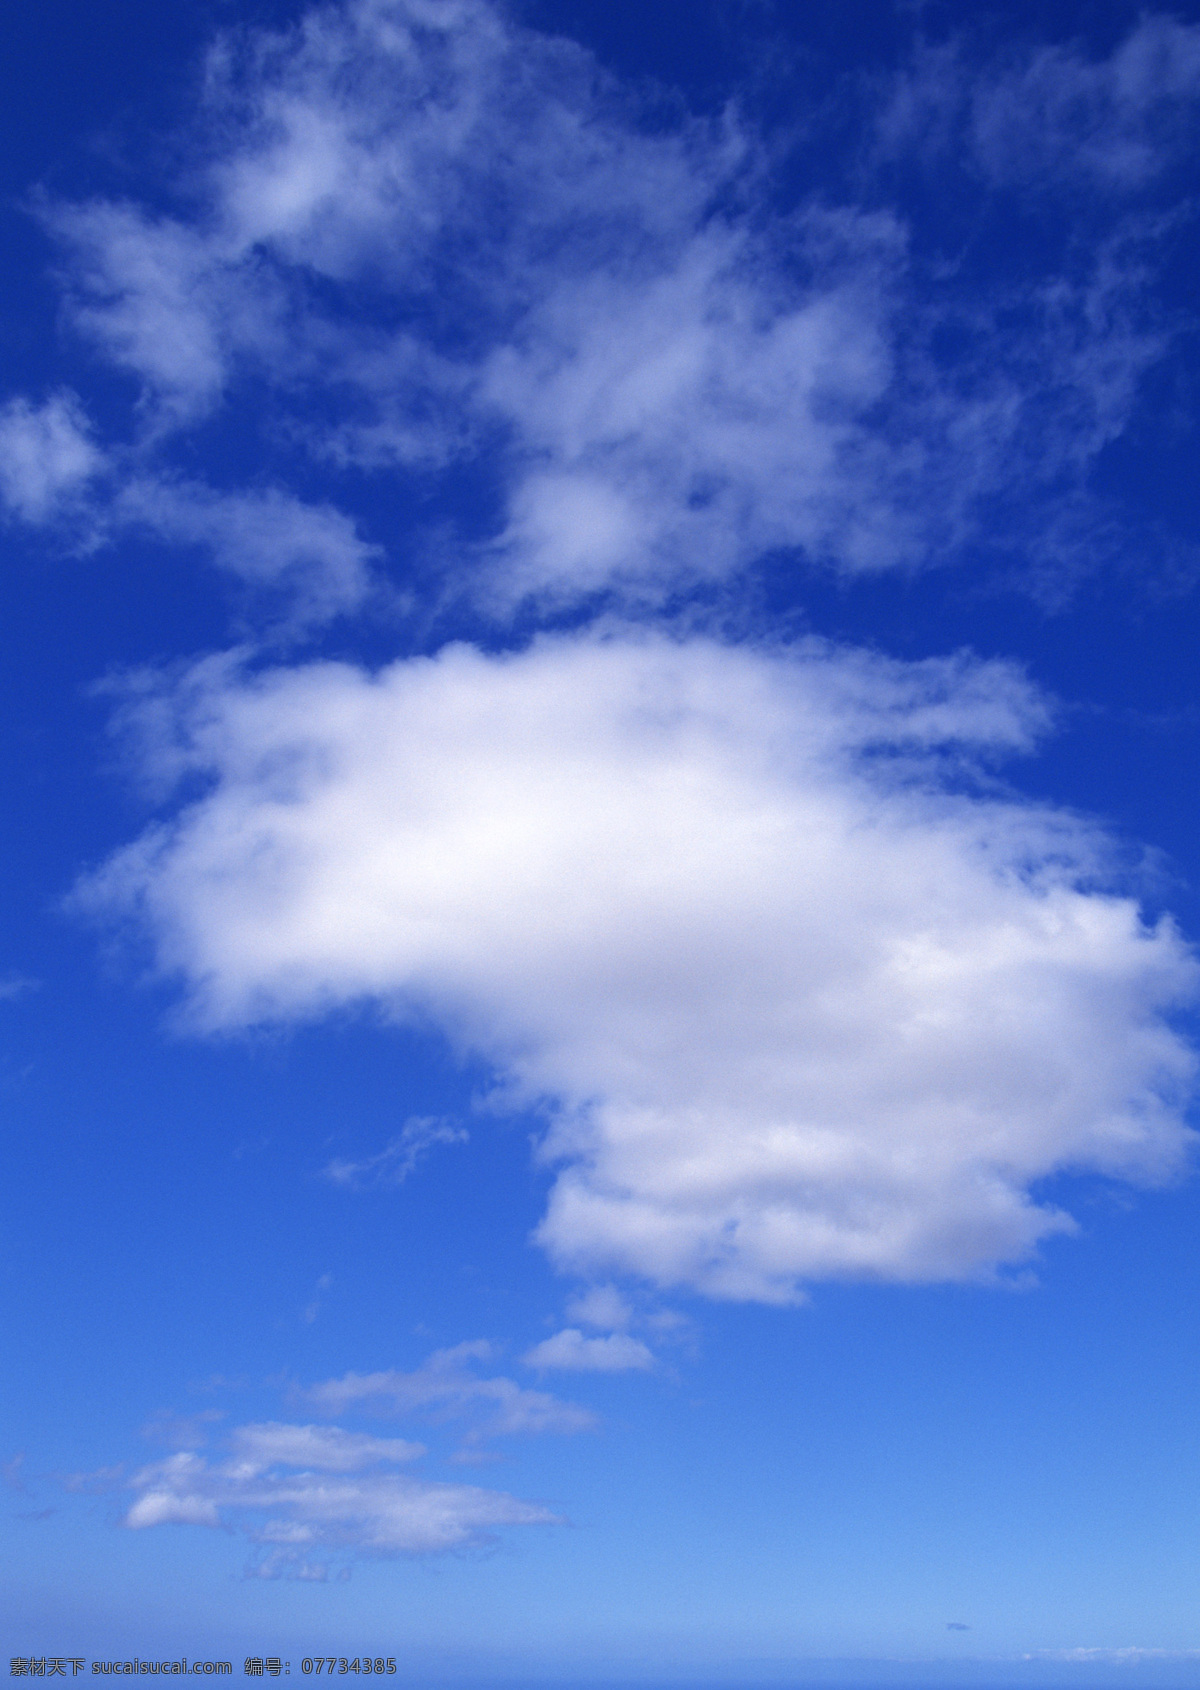 蓝天 白云 共享 超清 安静 氛围 云朵素材